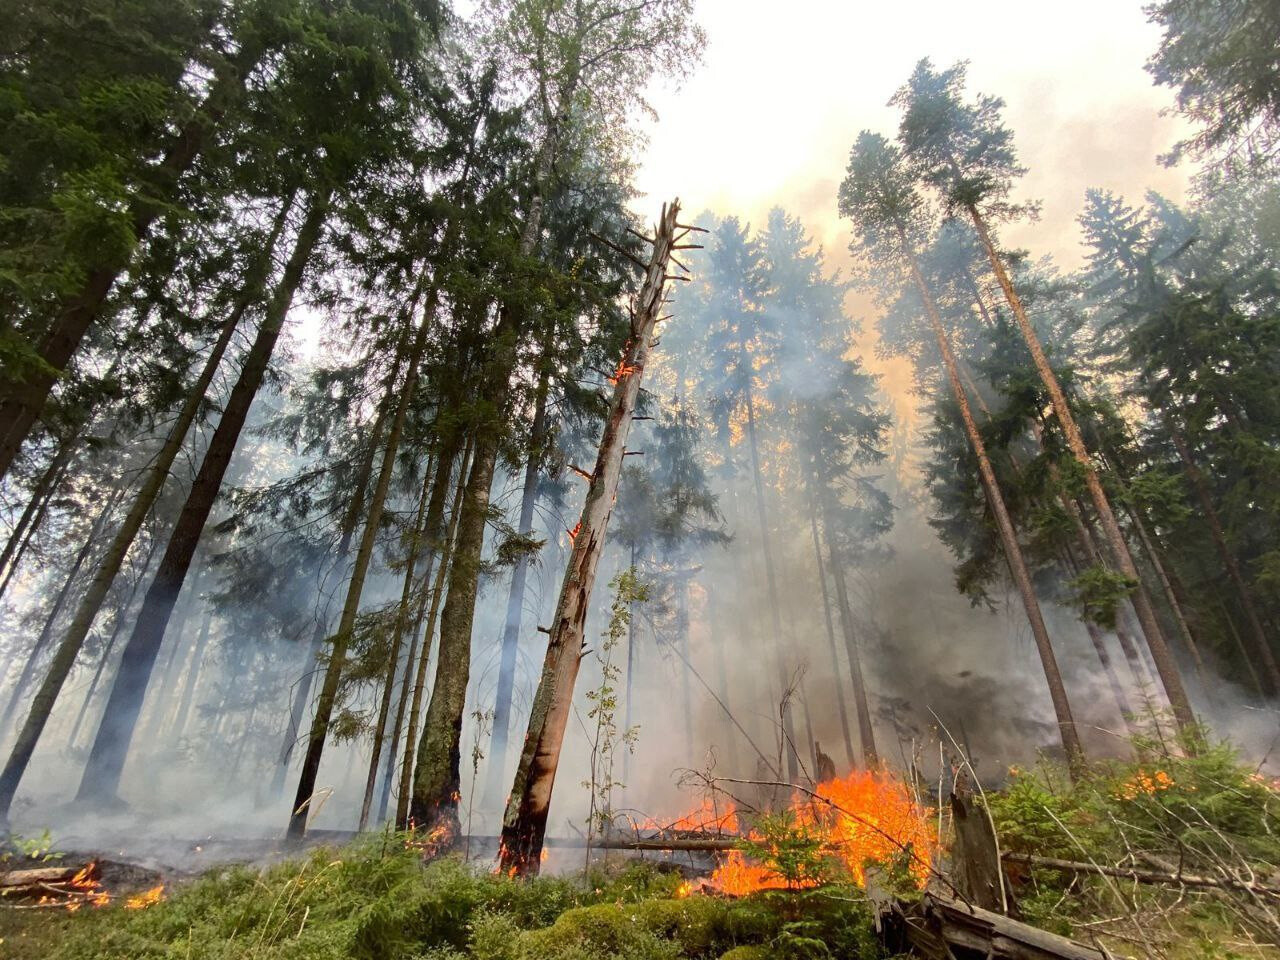 За прошлые сутки в лесах Подмосковья ликвидировано 7 возгораний, в том числе в Орехово-Зуевском лесничестве